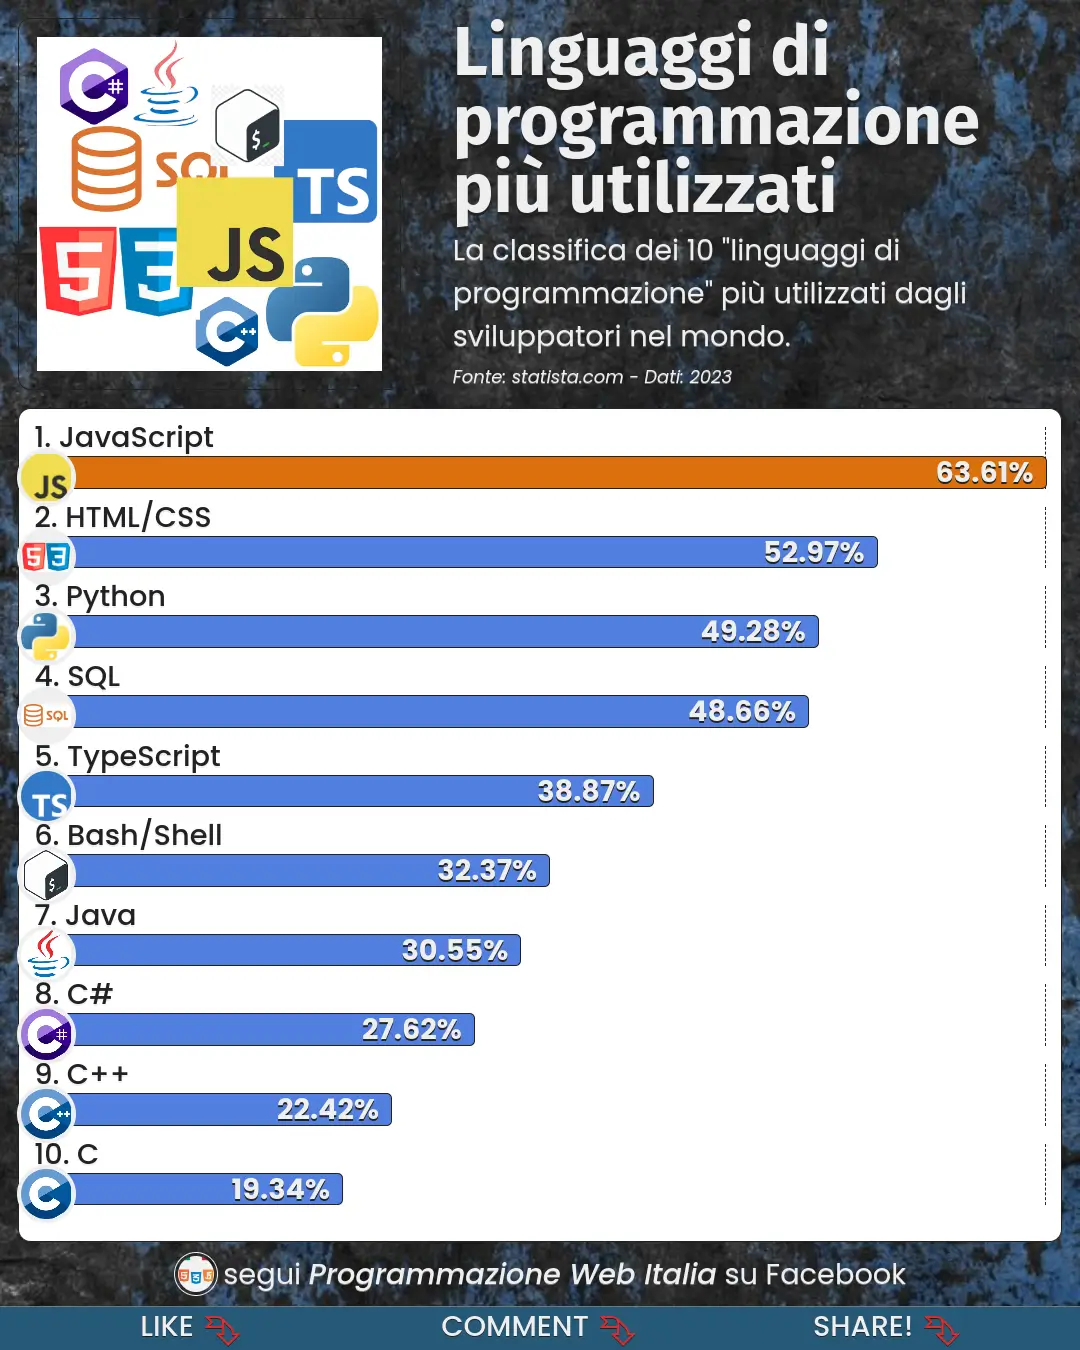 I linguaggi di programmazione più utilizzati dagli sviluppatori nel mondo